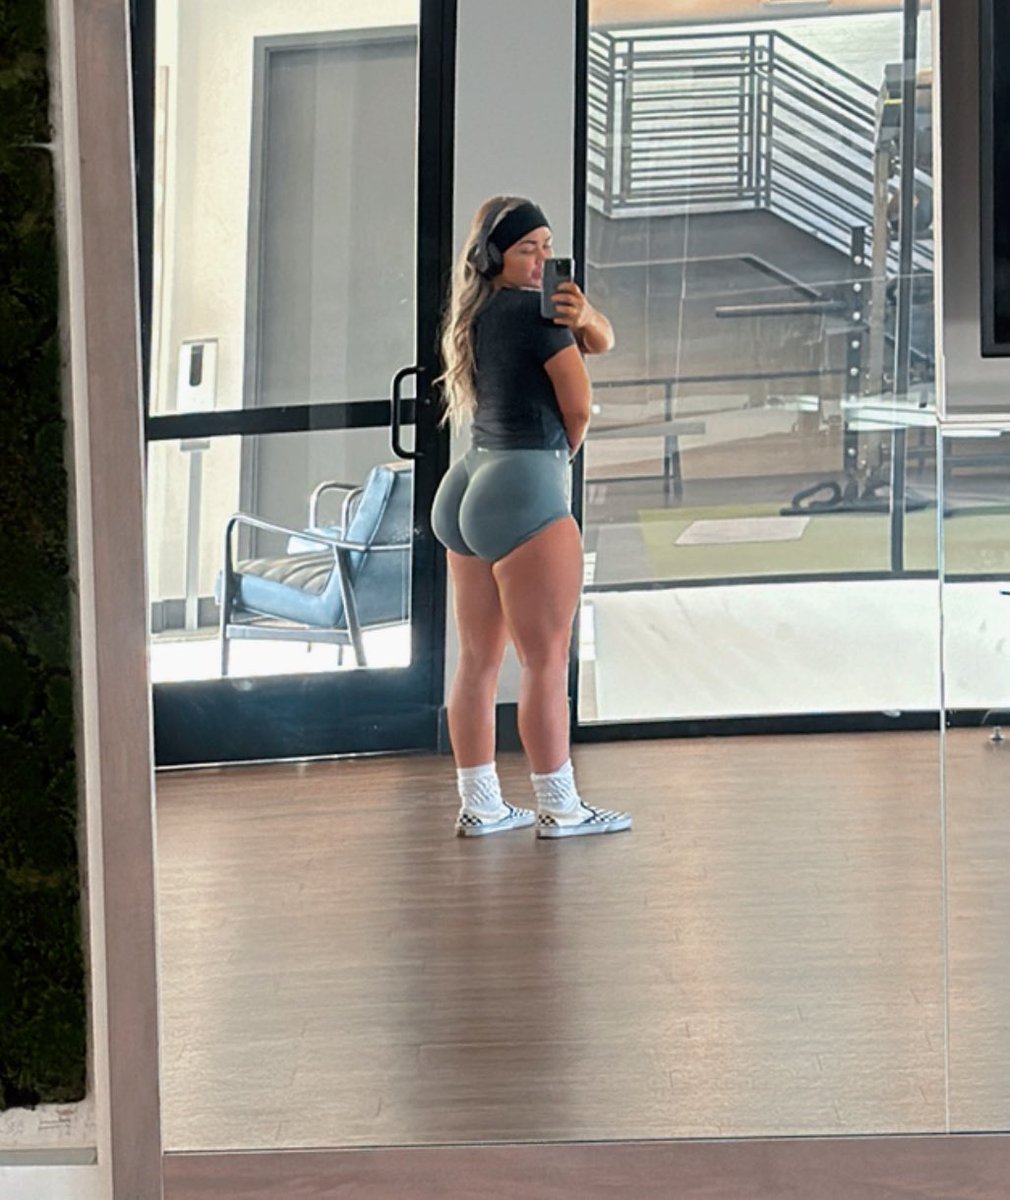 Gym booty 🍑